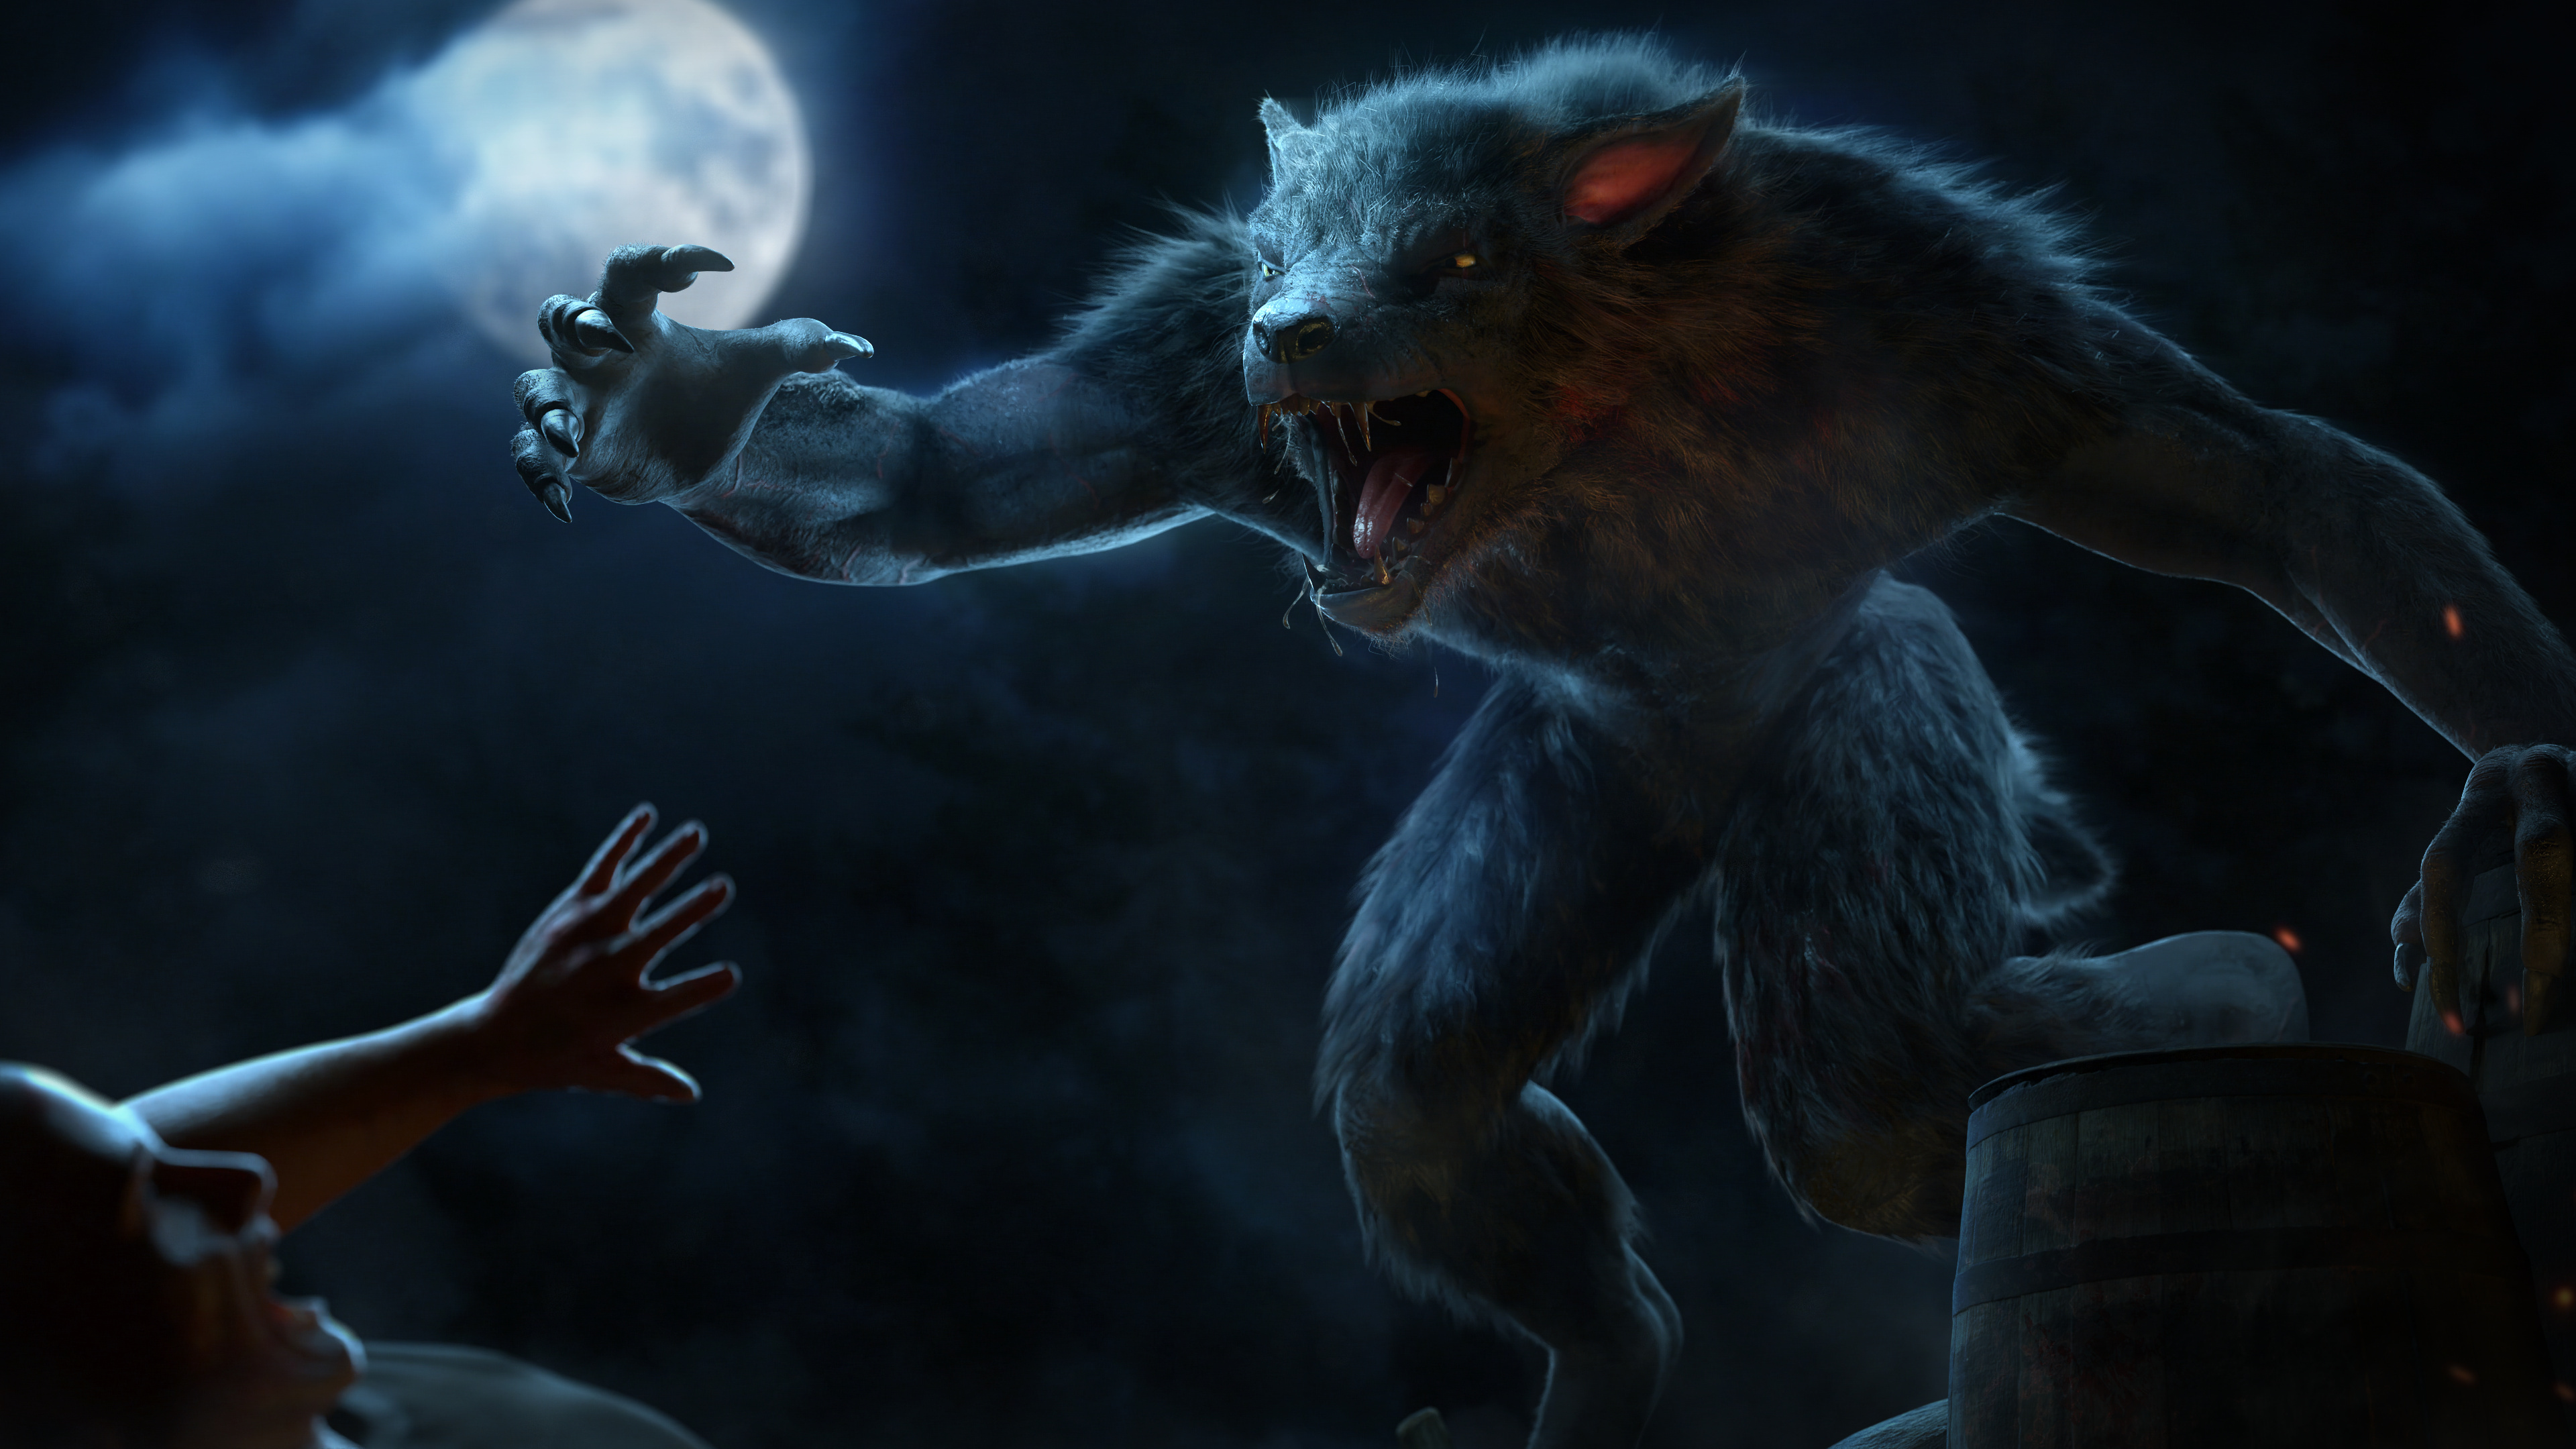 Skyrim werewolf, Blender artists community, Epic finished project, Game modding, 3840x2160 4K Desktop